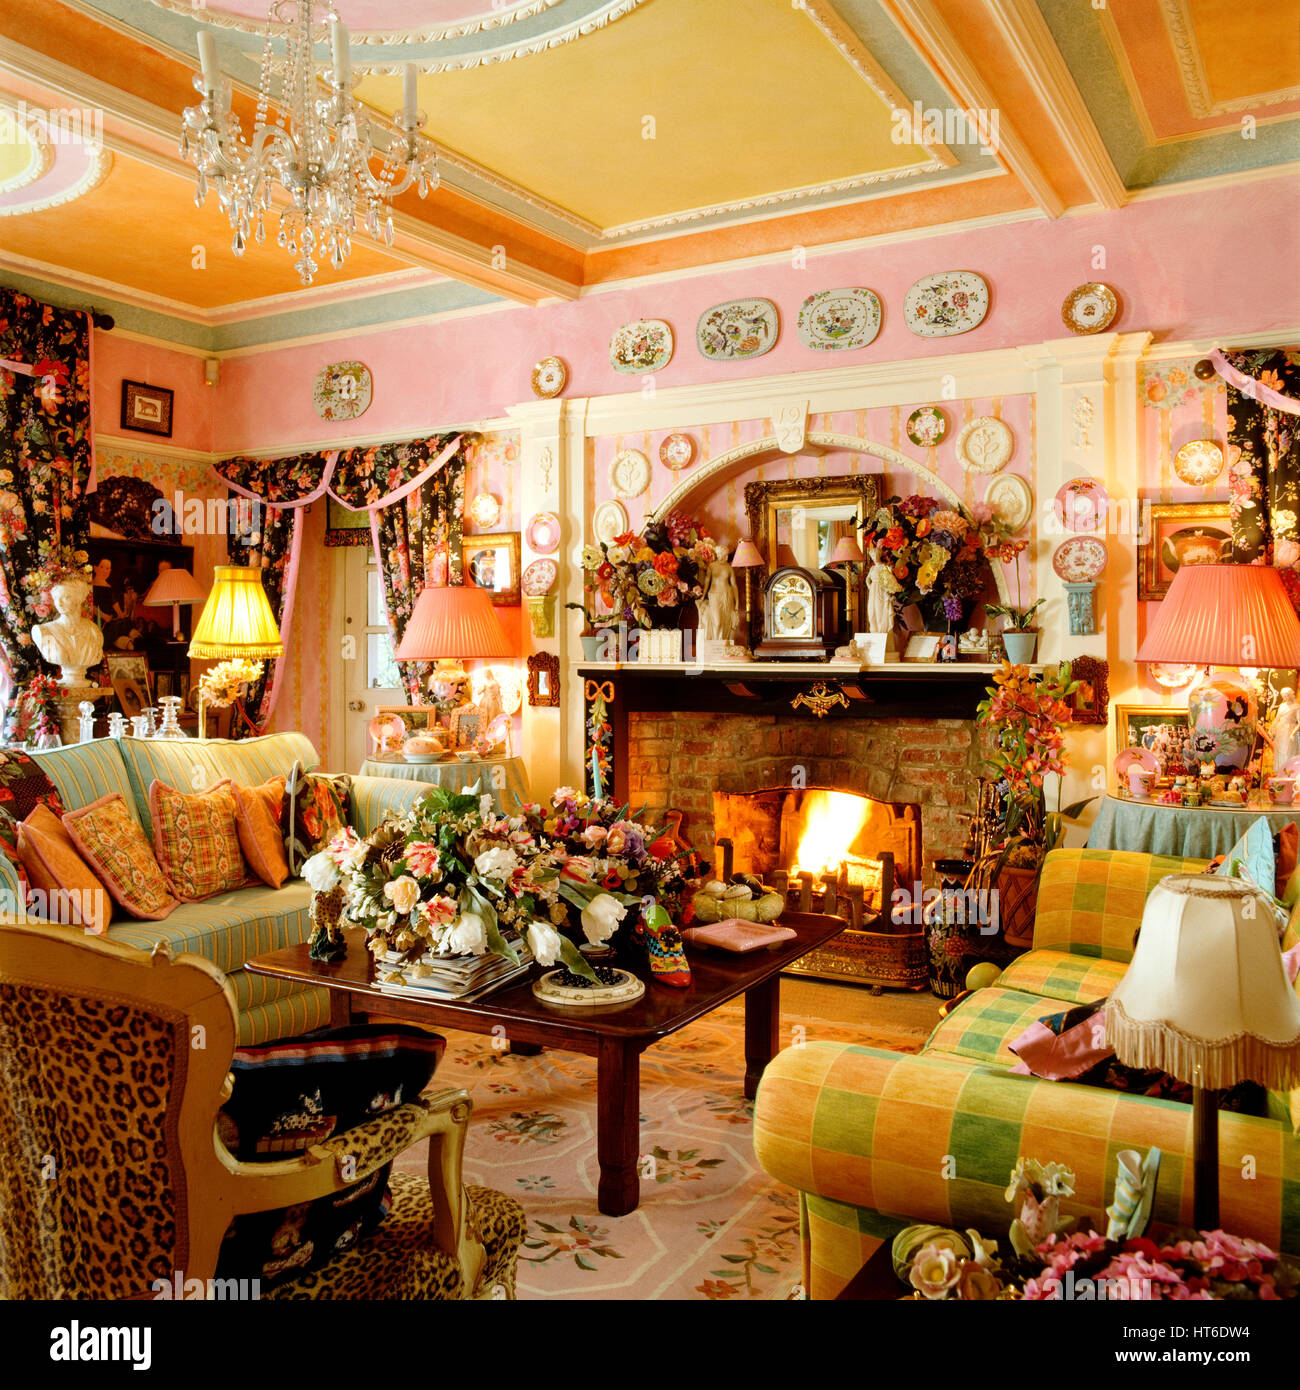 Retro style living room. Stock Photo